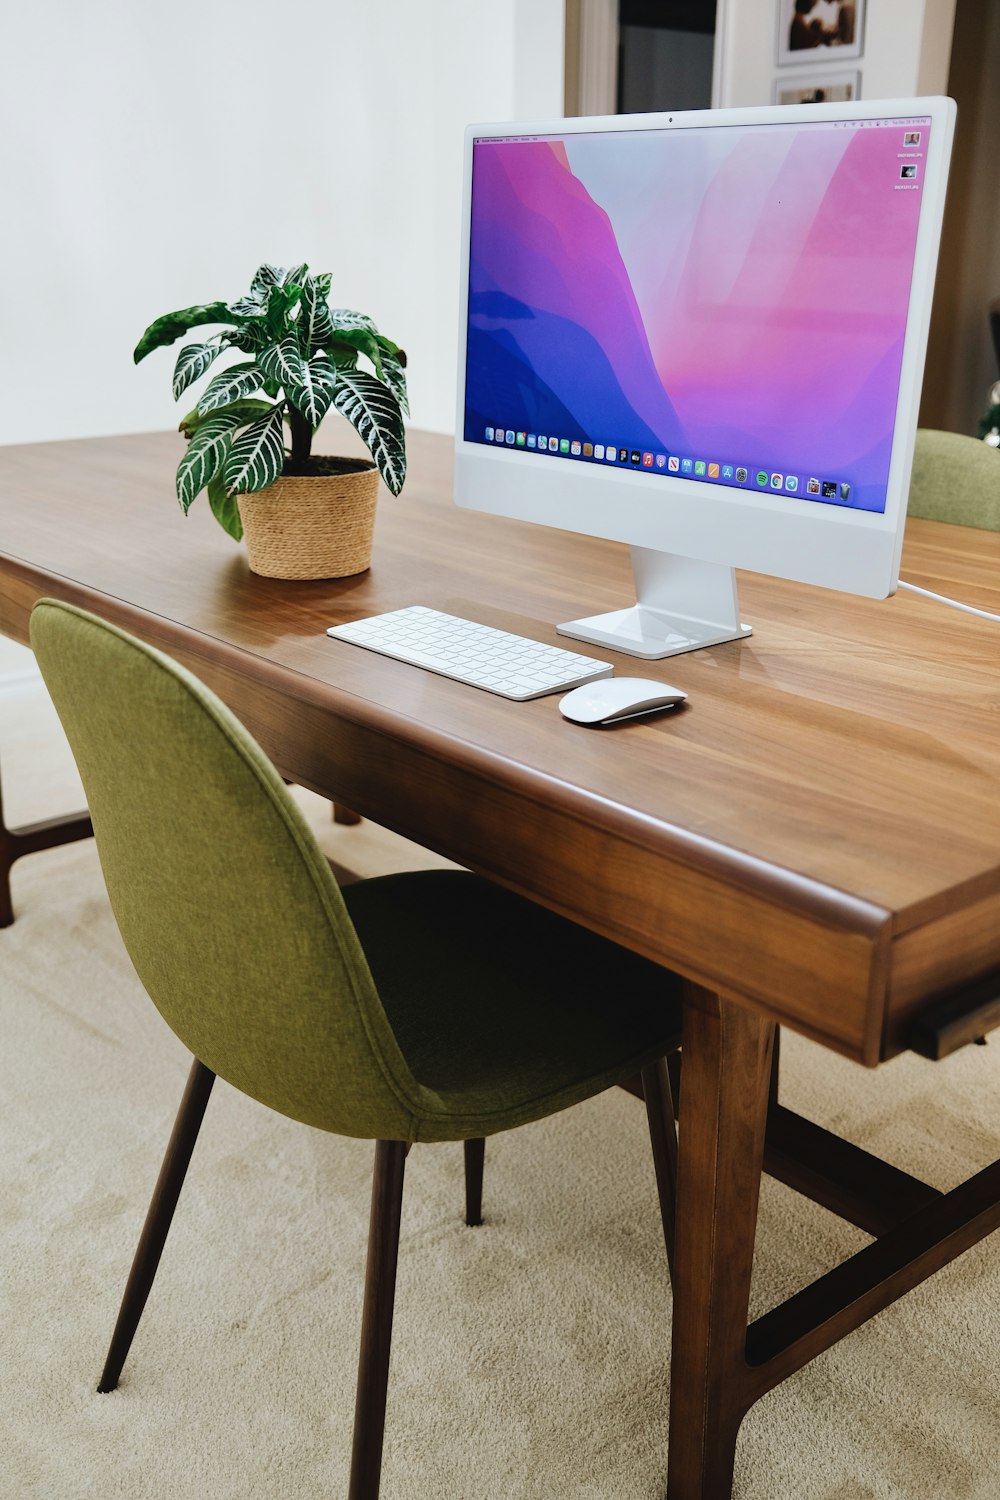 un escritorio con una computadora y una planta en maceta